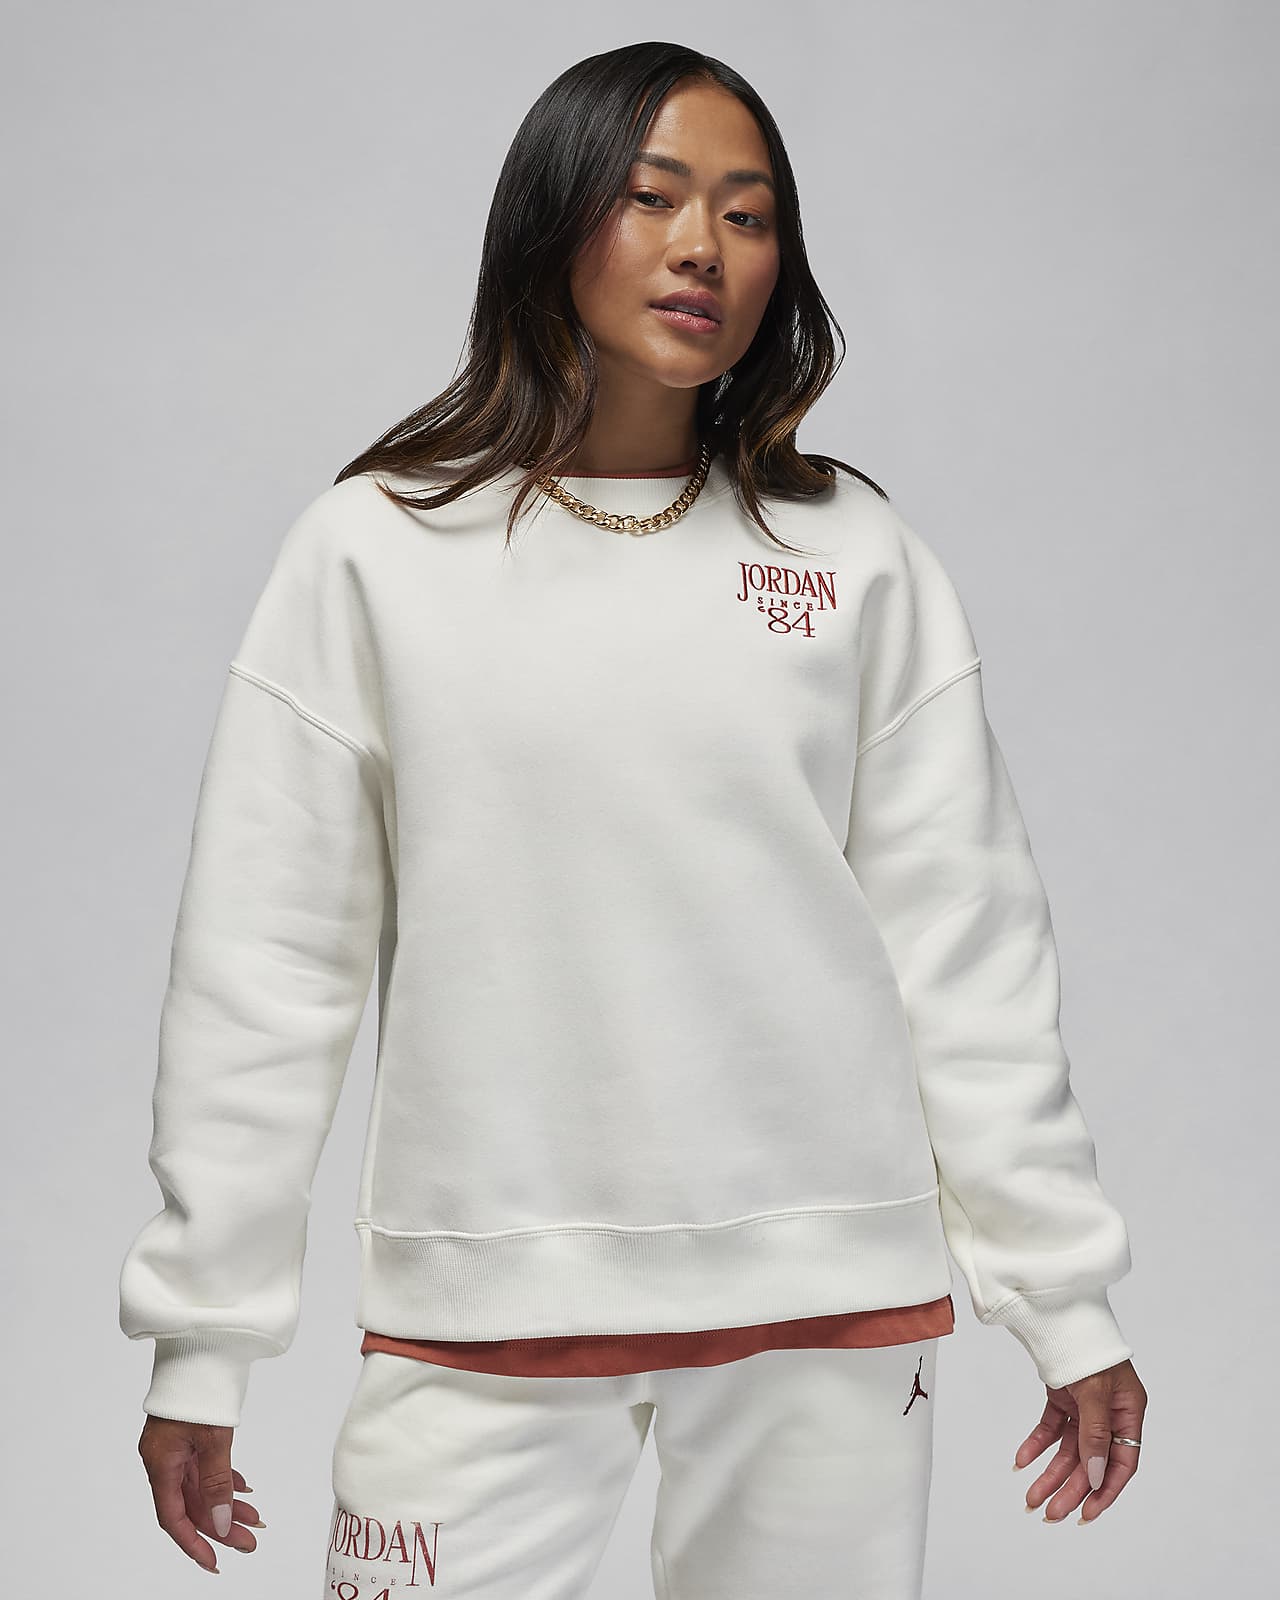 Sweatshirt Fleece in Heather Grey – Brooklyn Craft Company